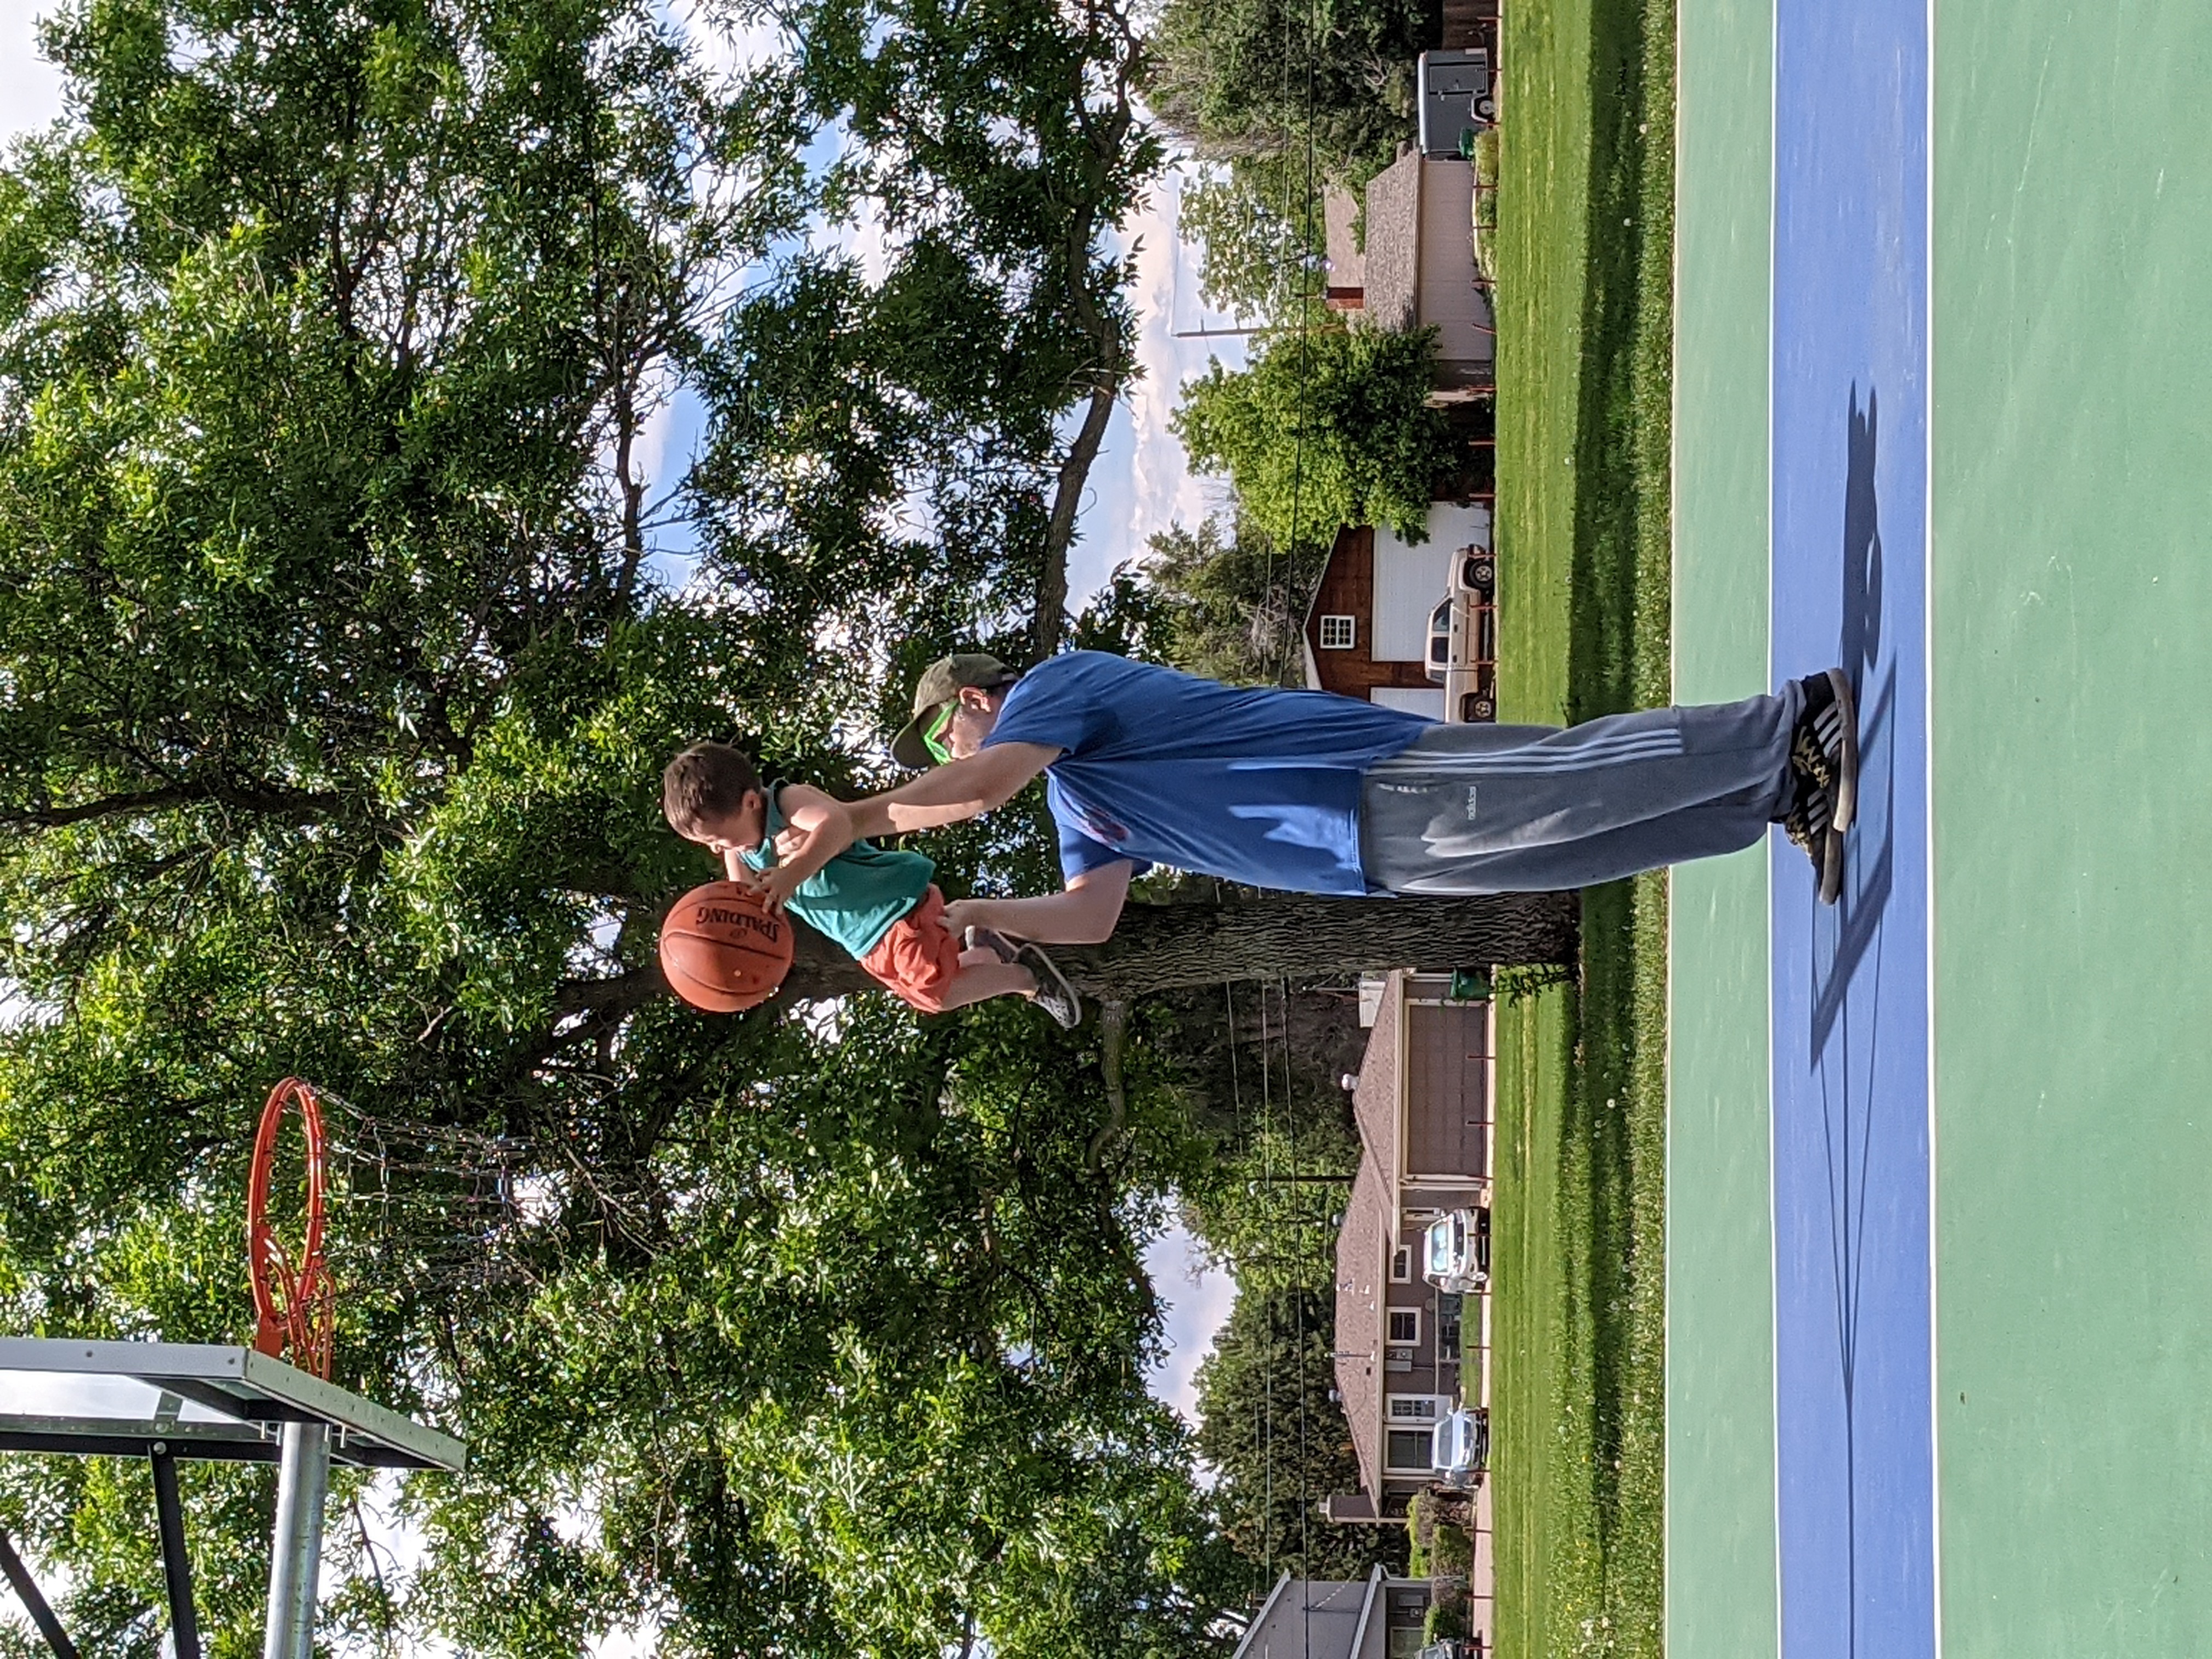 Flanny and myself playing basketball together.